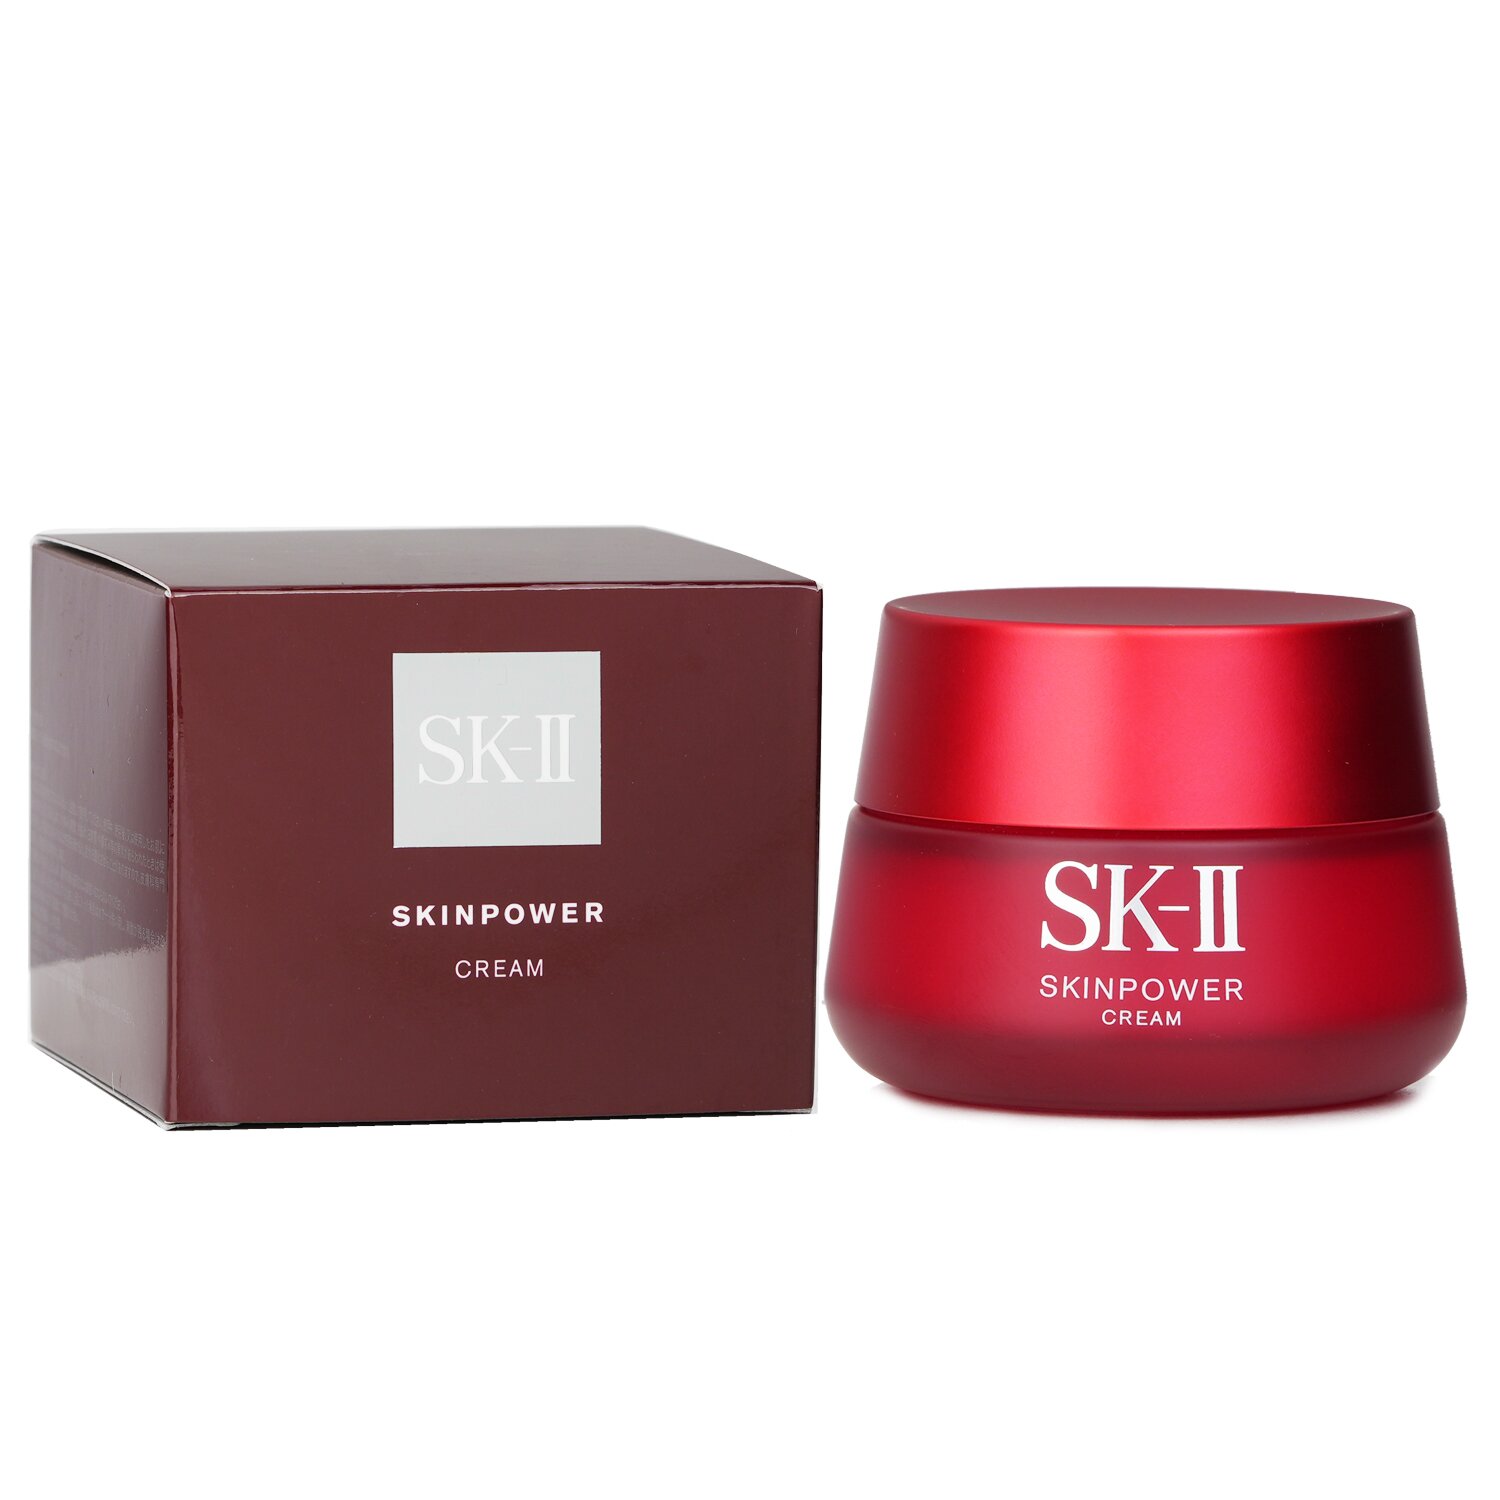 SK II SK-II Skinpower Cream (Travel exclusive) 80g/2.7oz